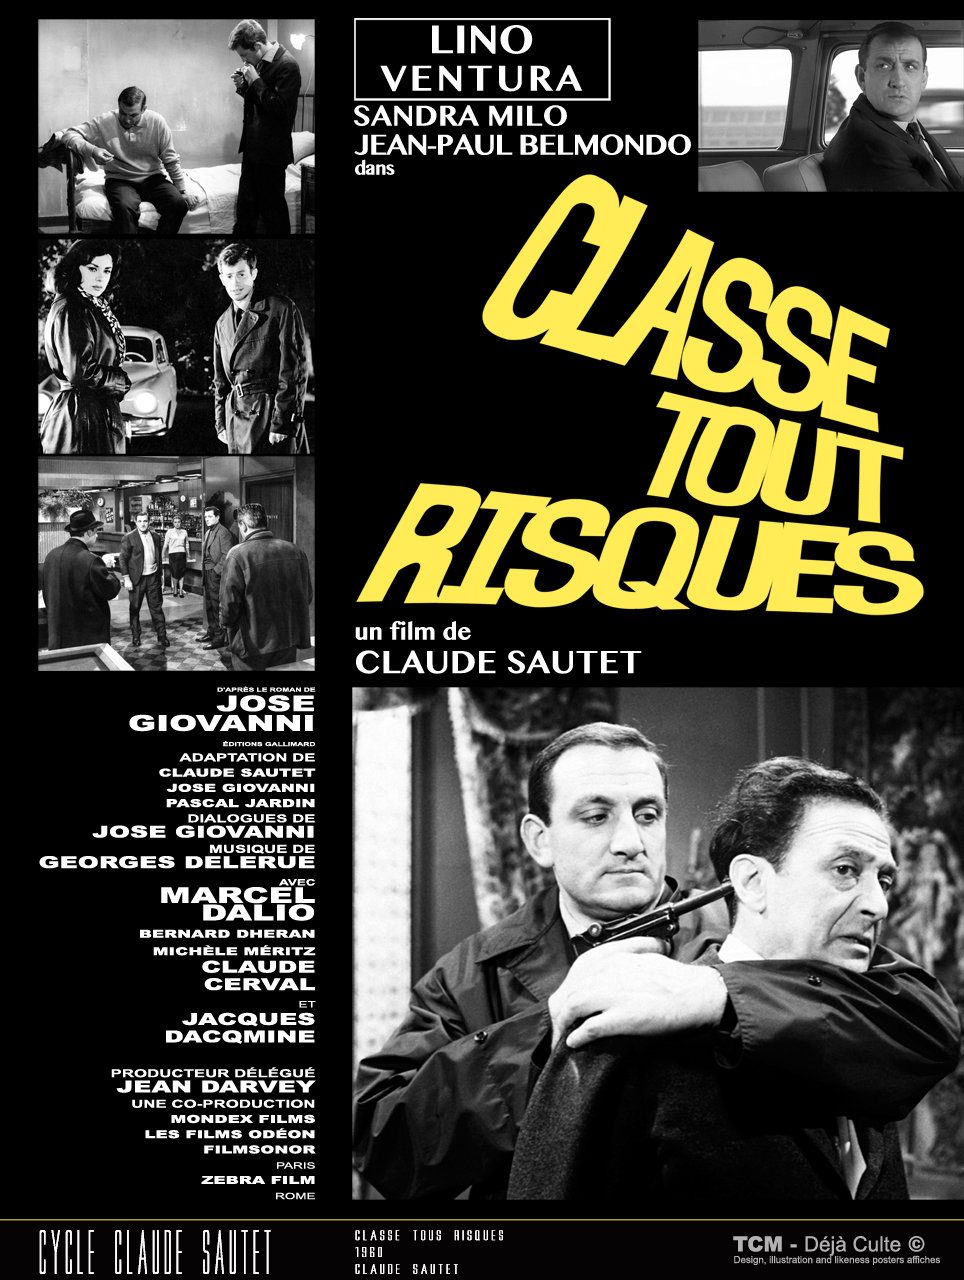 Classe Tous Risques (The Big Risk /Asfalto Che Scotta) 1960 Claude